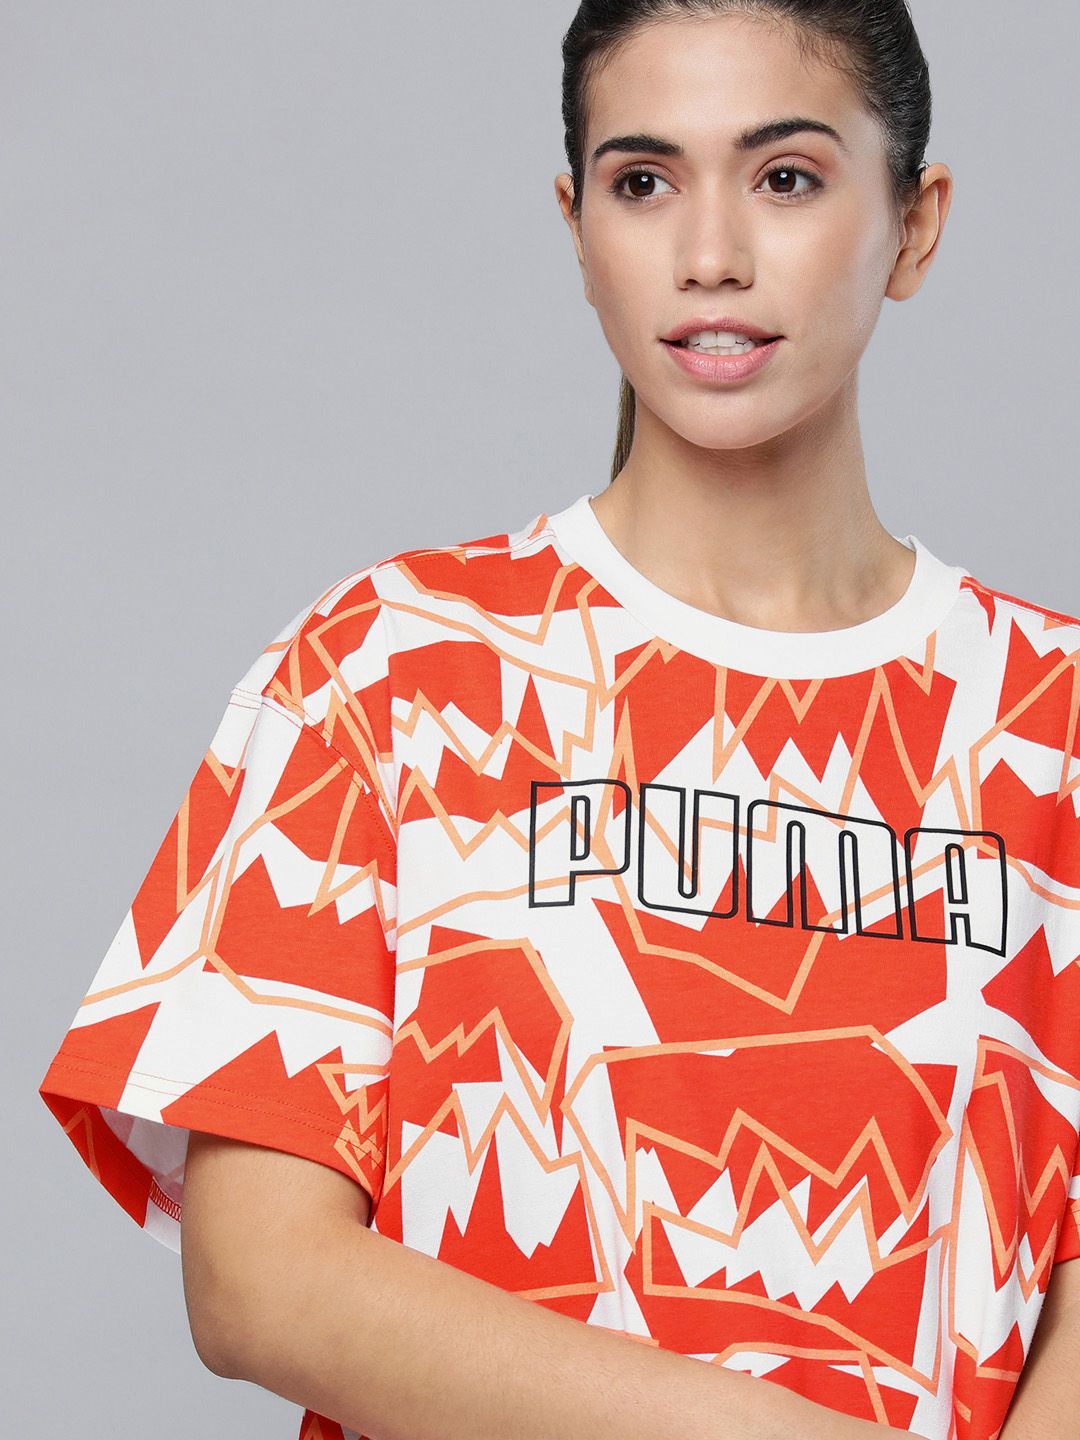 PUMA Hoops Cherry Tomato Swish Printed Women's Basketball T-shirt Price in India